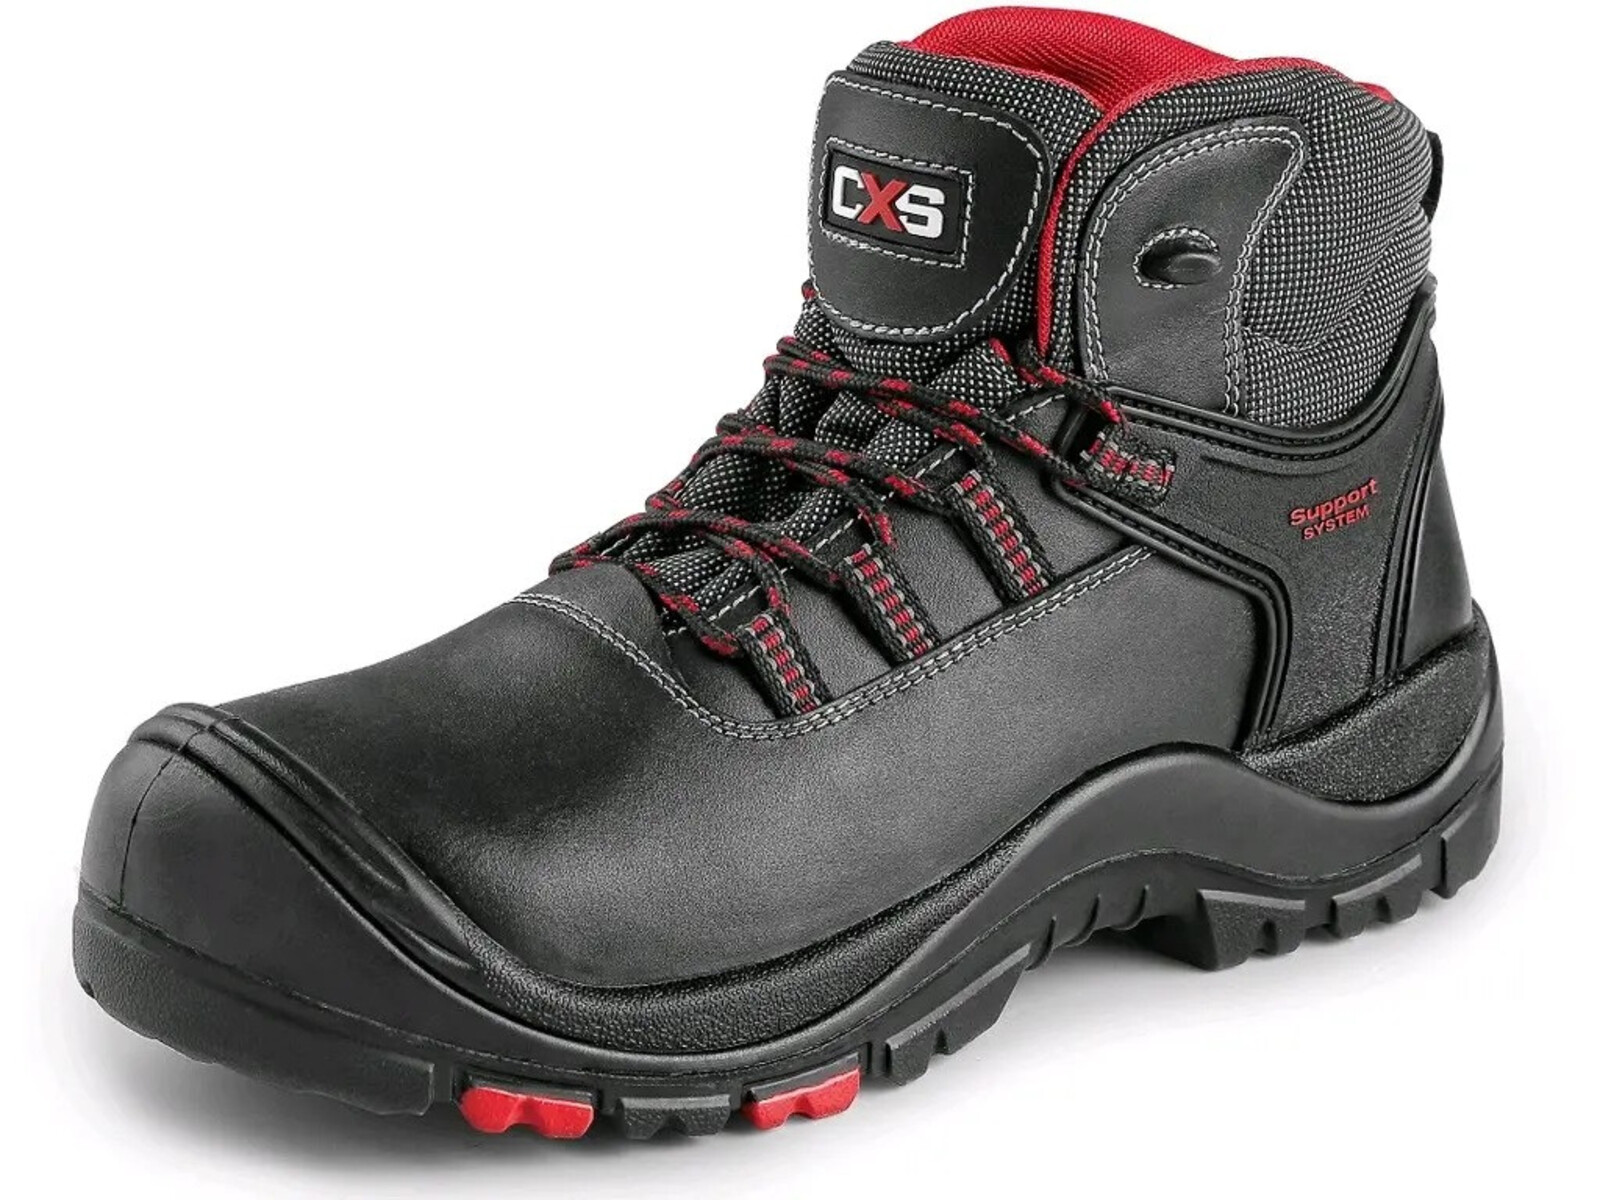 Bezpečnostná členková obuv CXS Rock Granite S3 SRC HRO MF - veľkosť: 38, farba: čierna/červená